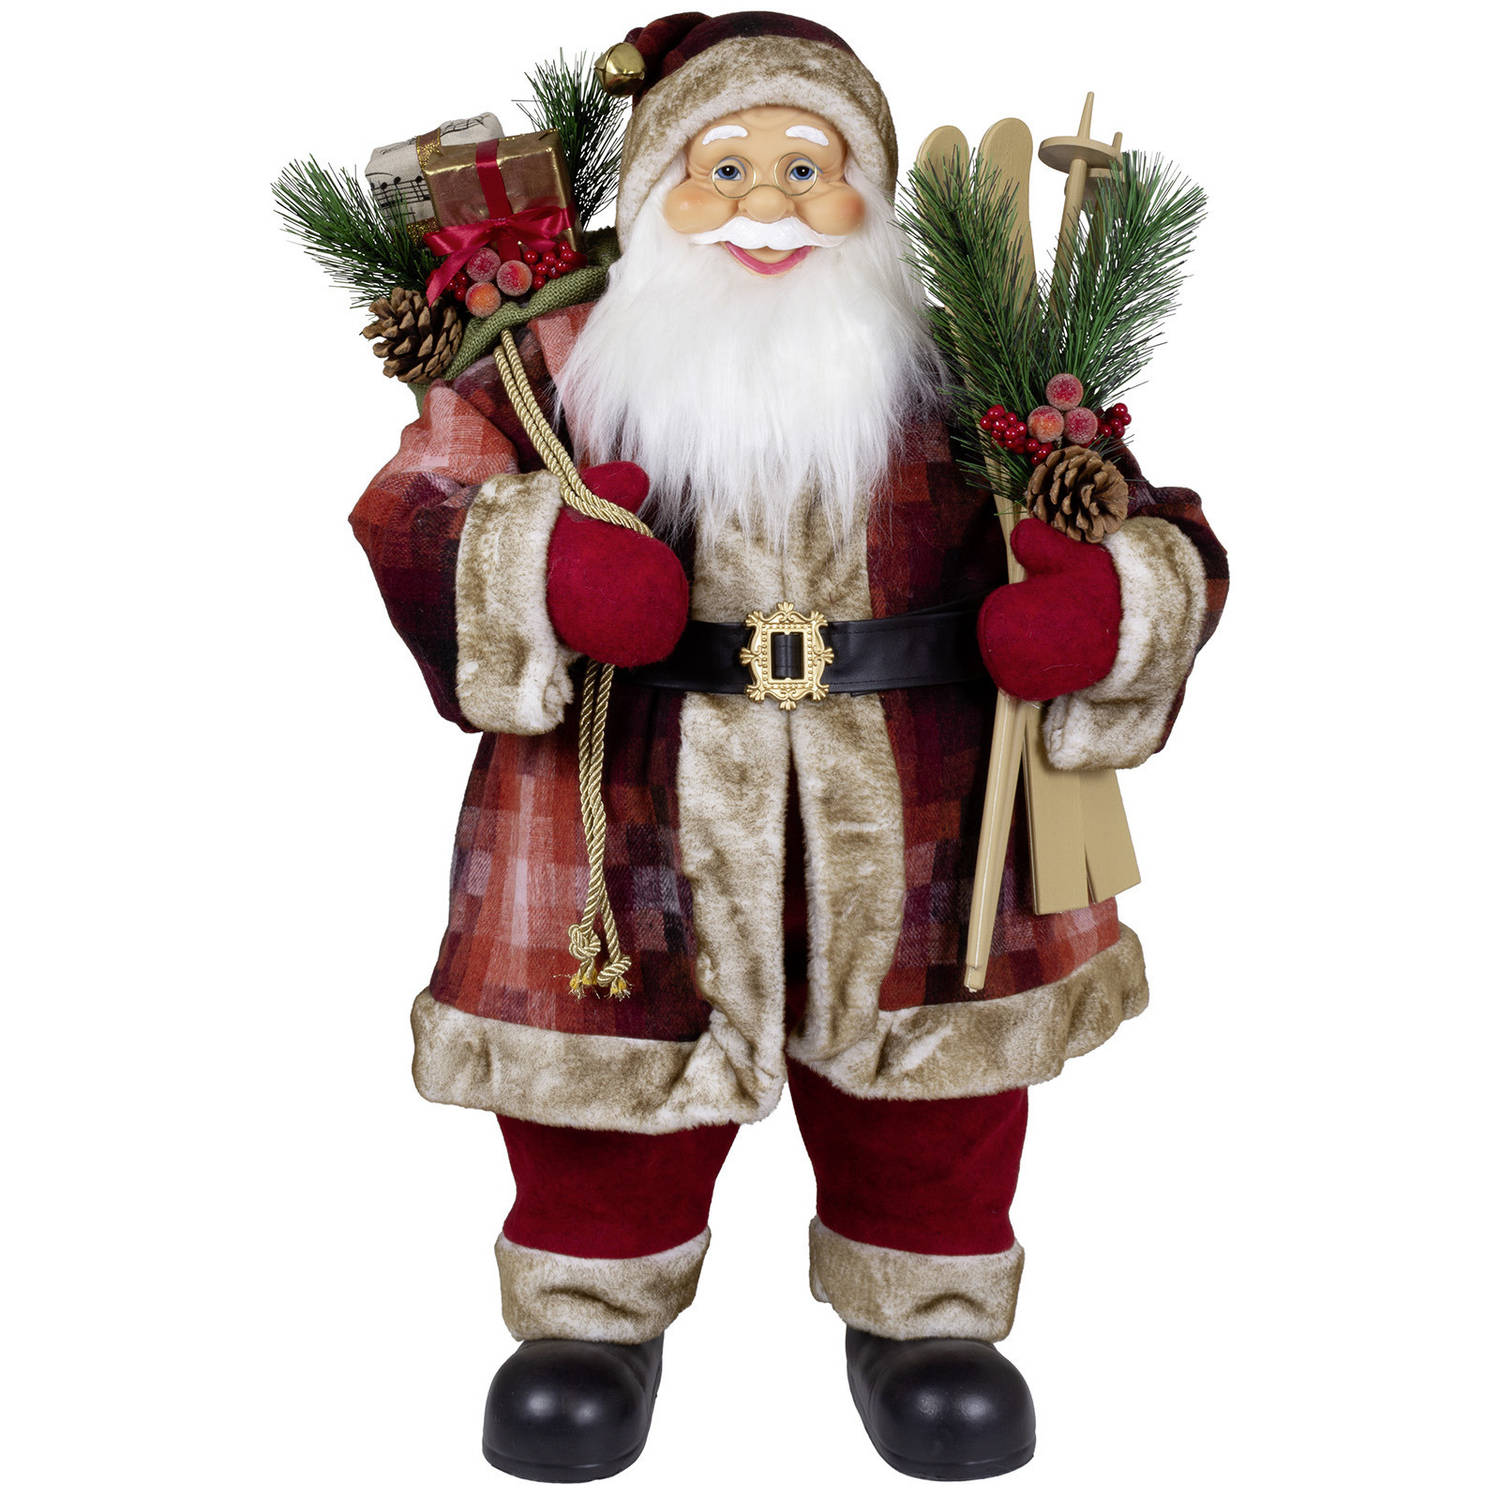 Kerstman decoratie pop Joris - H80 cm - rood - staand - kerst beeld - kerst figuur